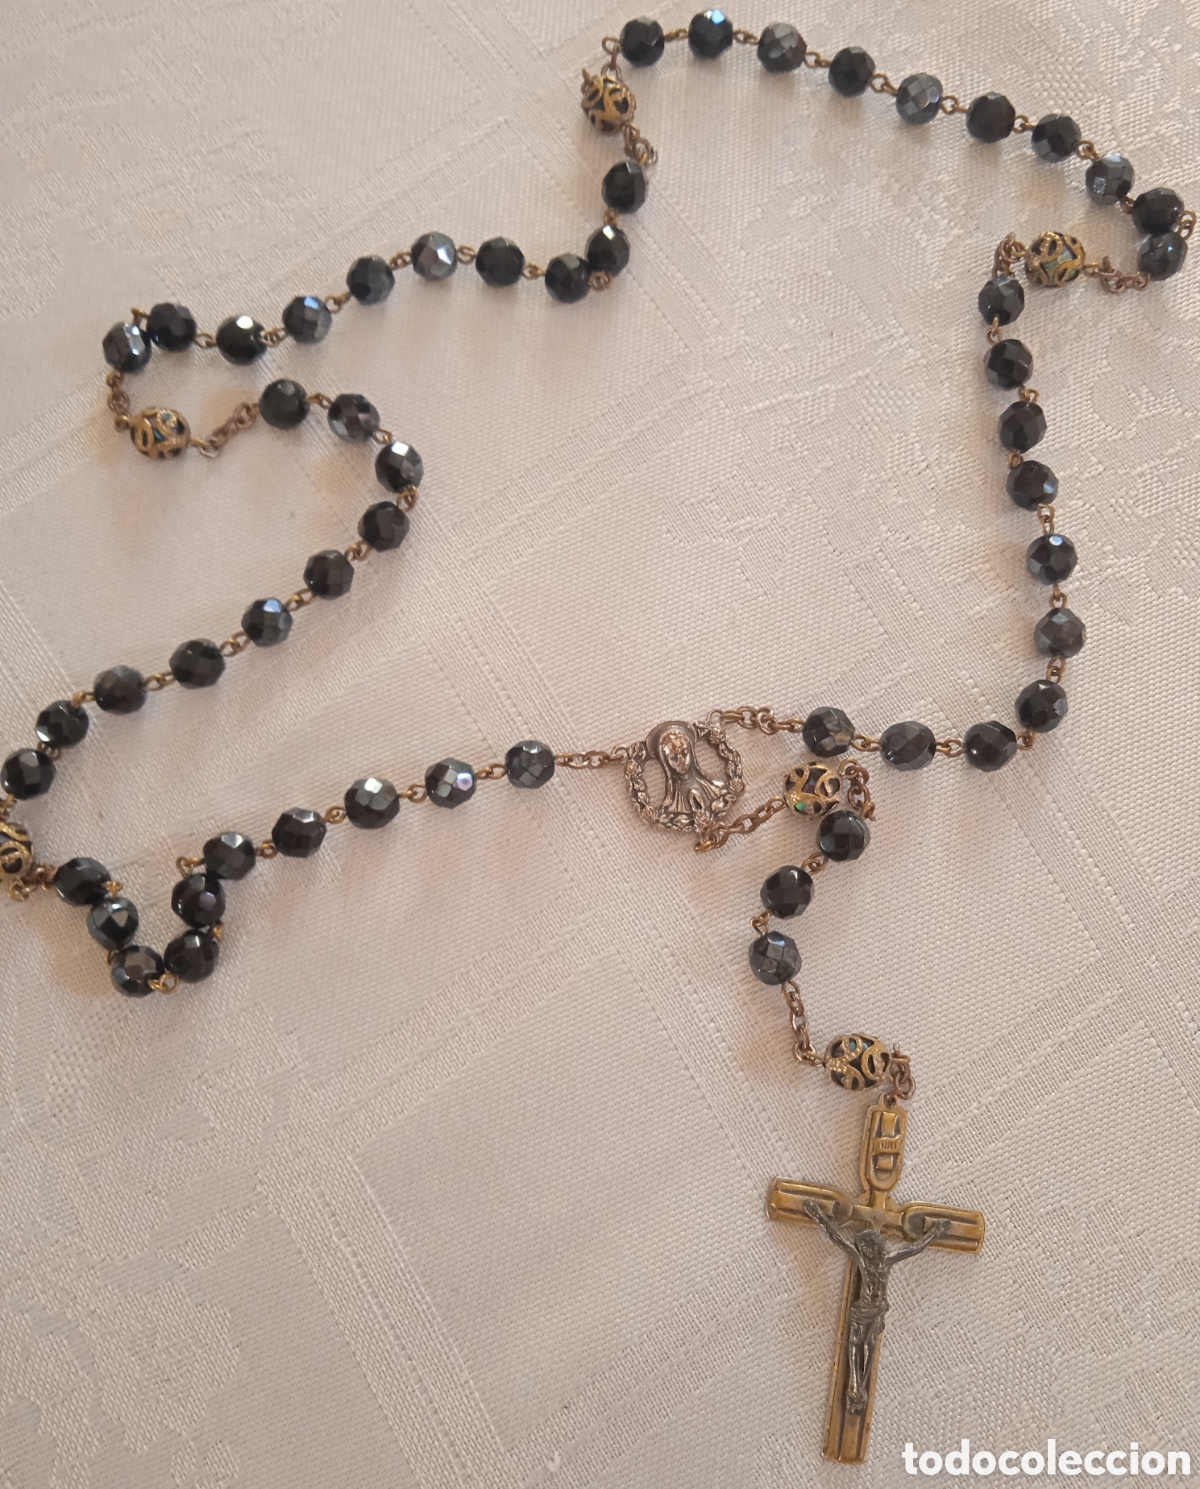 precioso antiguo rosario religioso - Compra venta en todocoleccion